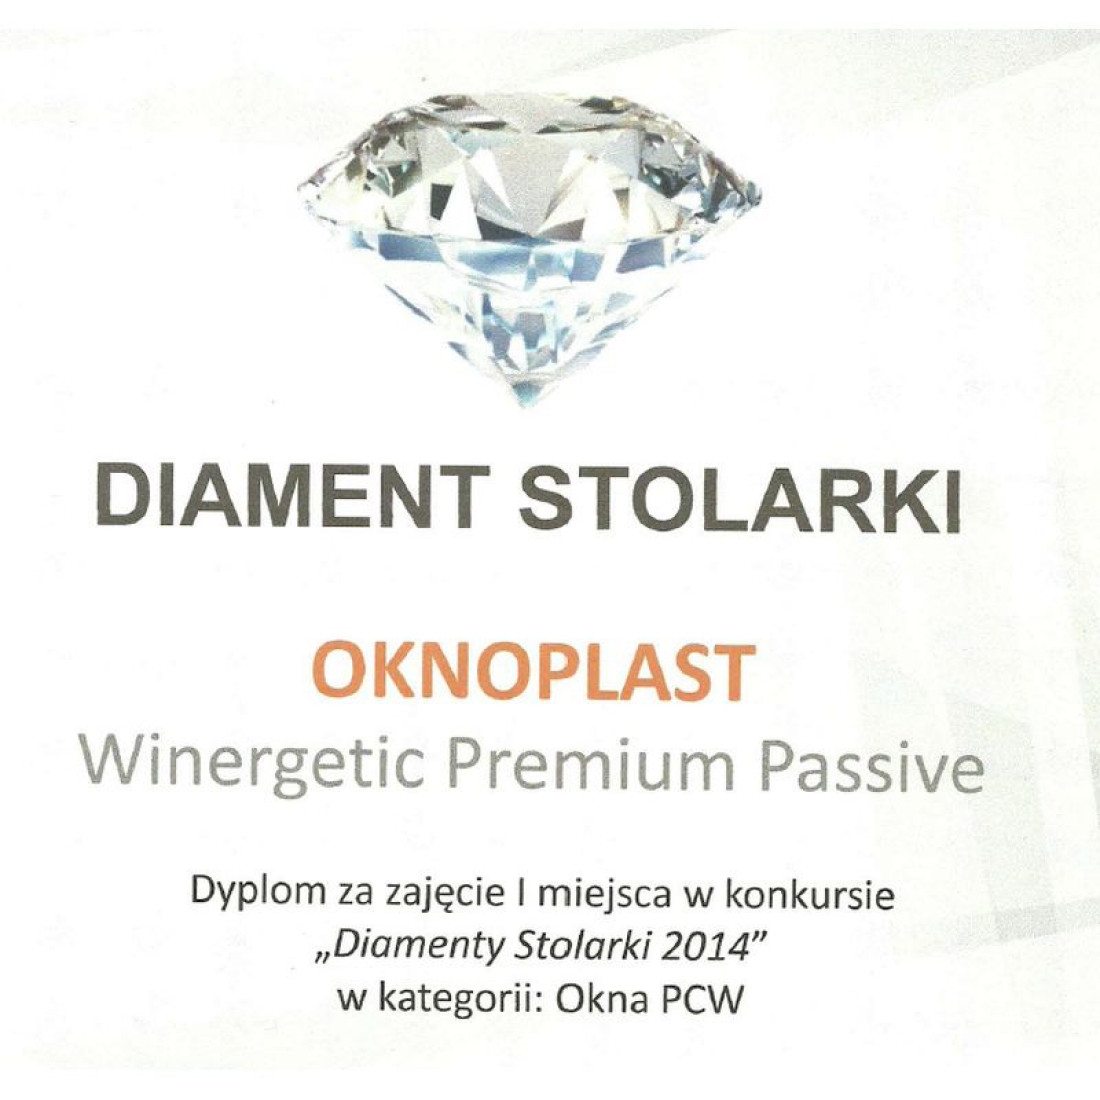 OKNOPLAST nagrodzony Diamentem Stolarki 2014